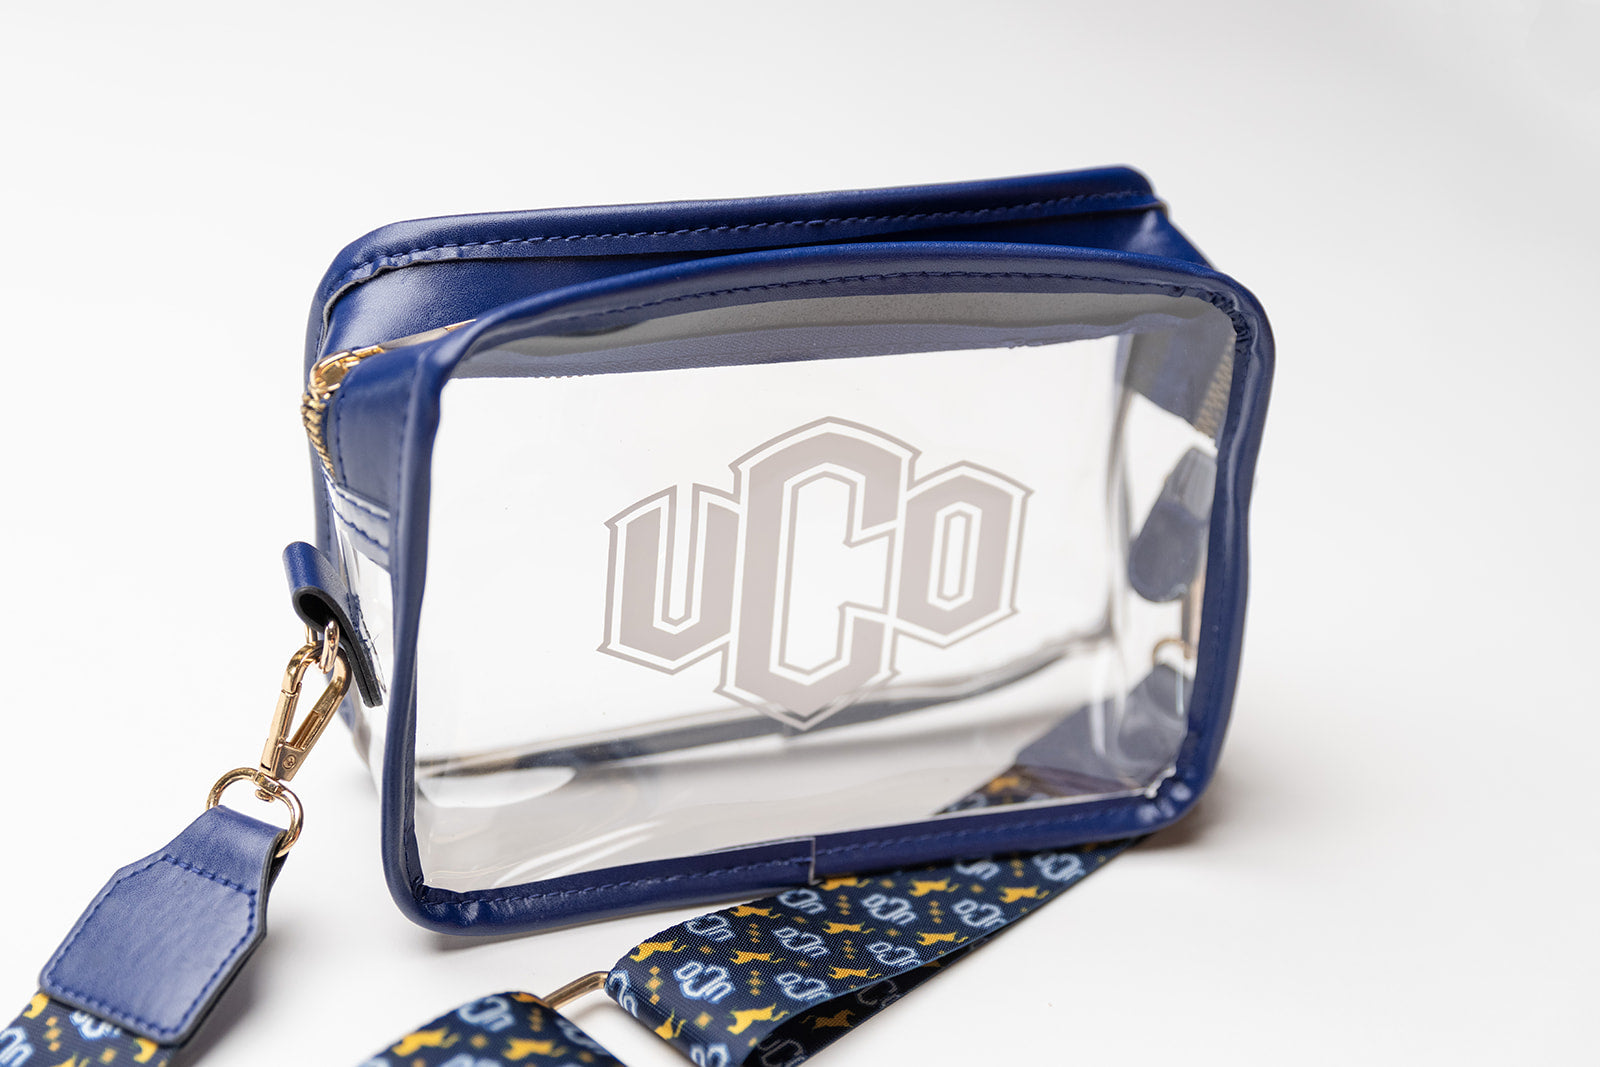 UCO Stadium Bag – William & Lauren CO